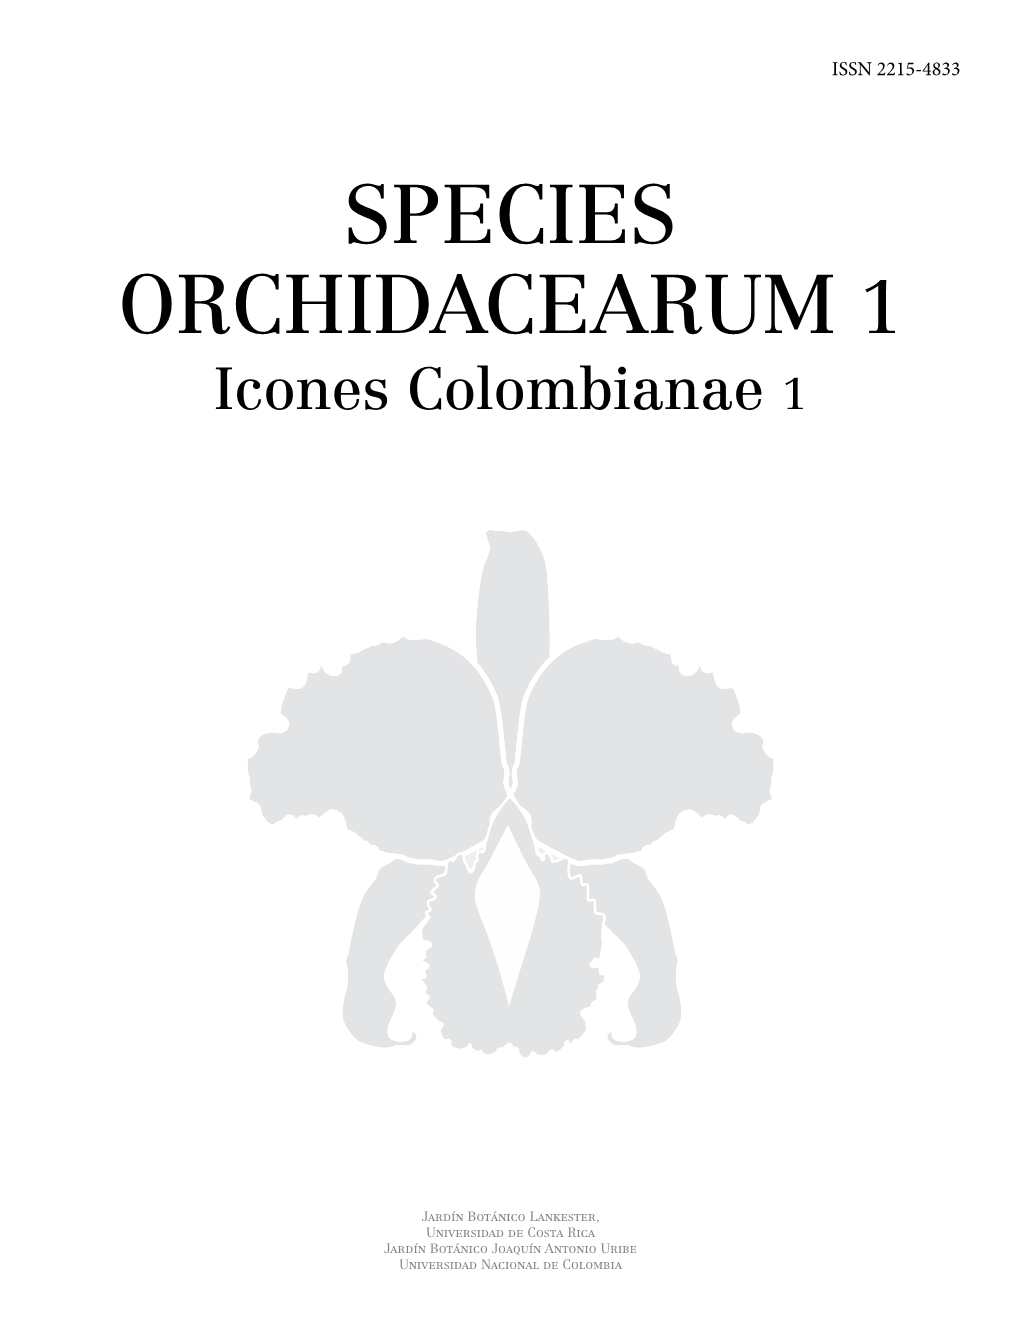 SPECIES ORCHIDACEARUM 1 Icones Colombianae 1